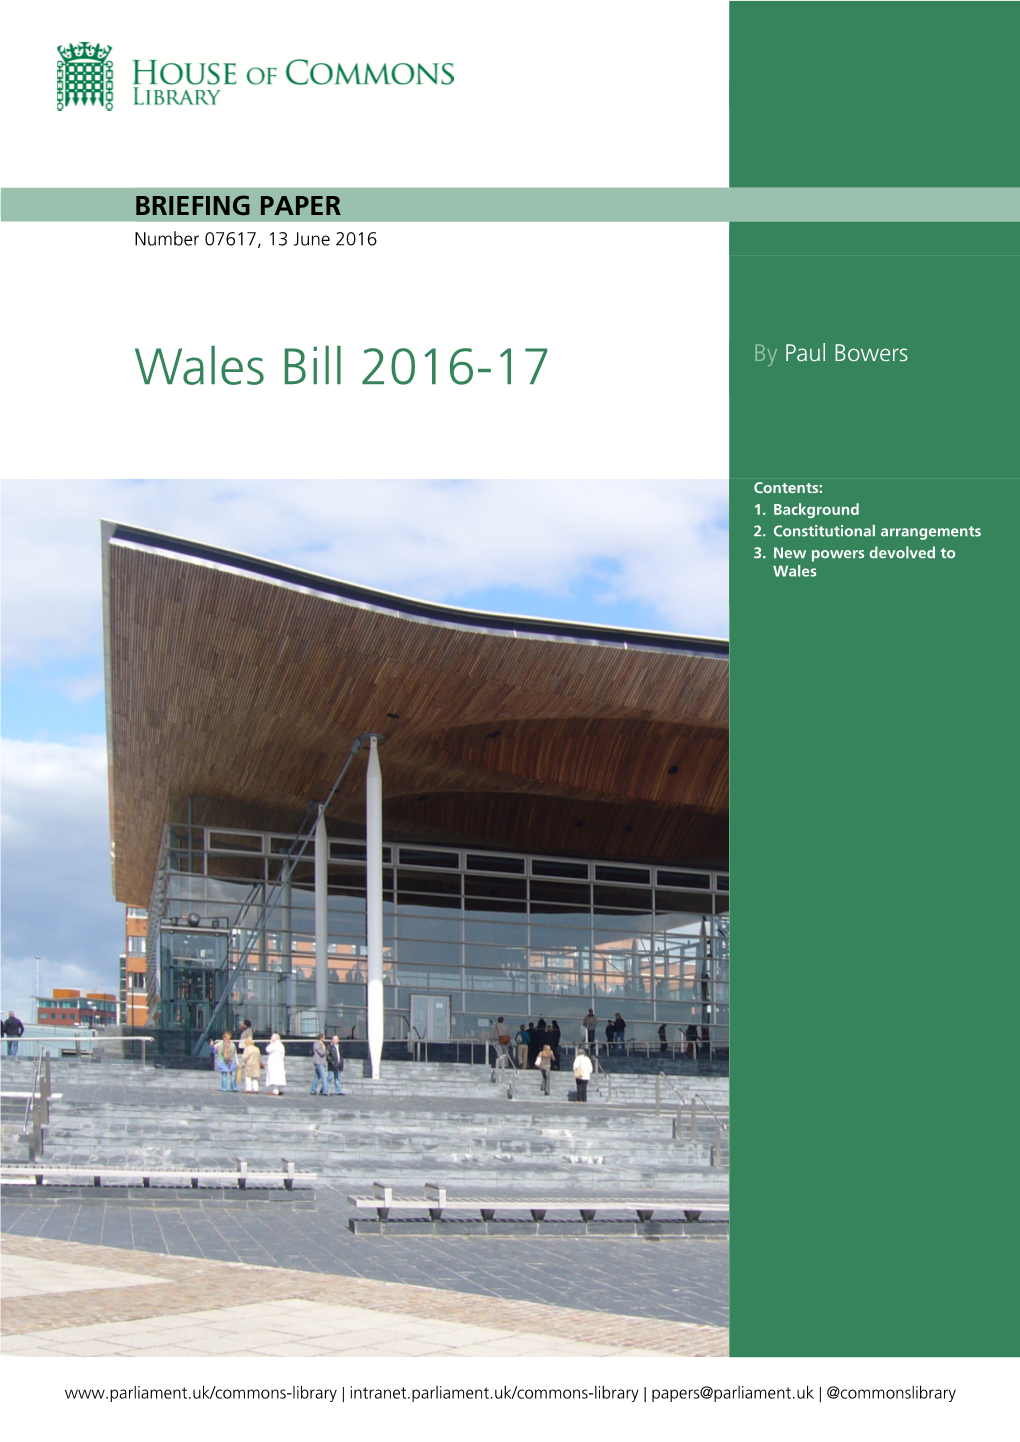 Wales Bill 2016-17